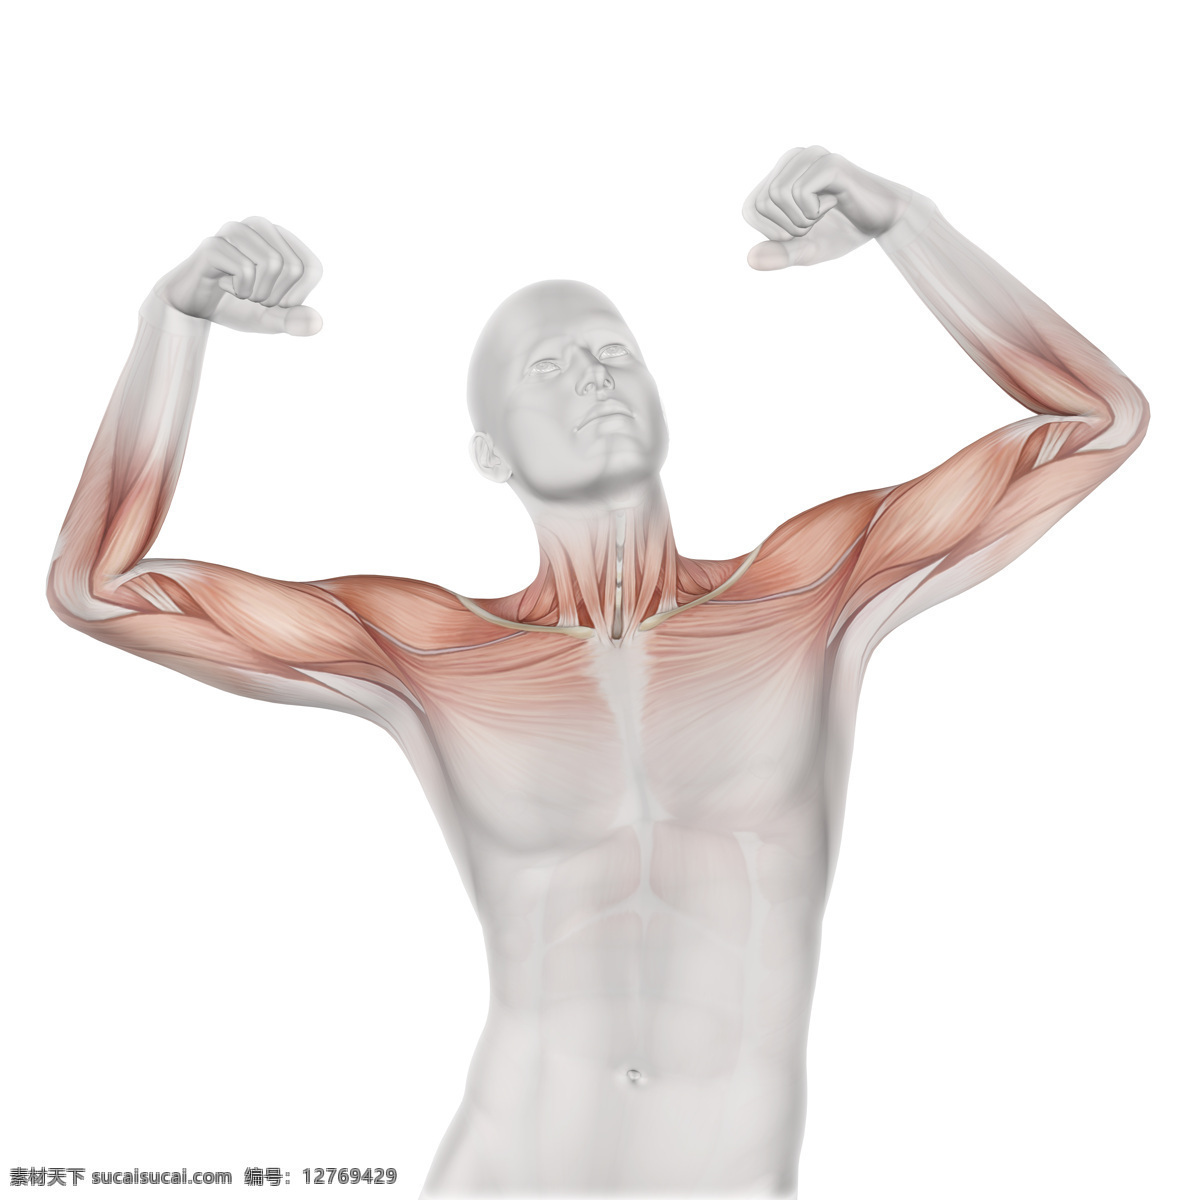 三维人体模型 医学研究 强壮 肌肉 立体 三维 人体模型 医学 肌肉疼痛 高质量图片 旅游摄影 国外旅游